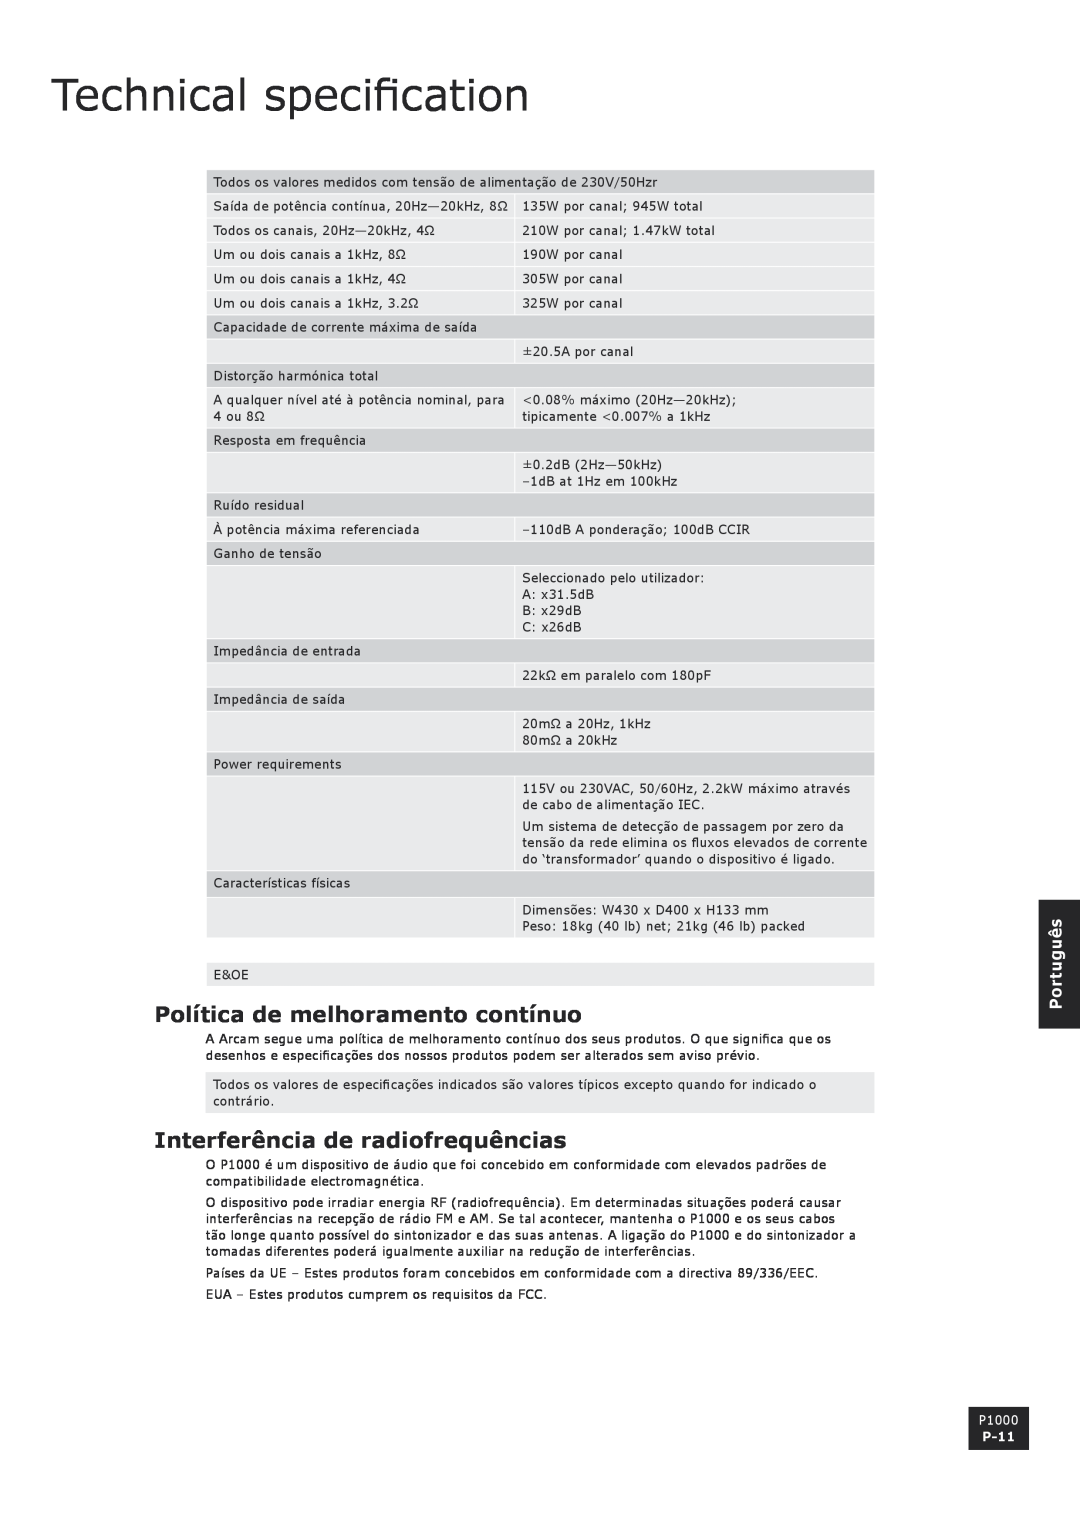 Arcam P1000 Política de melhoramento contínuo, Interferência de radiofrequências, P-11, Technical specification, Português 